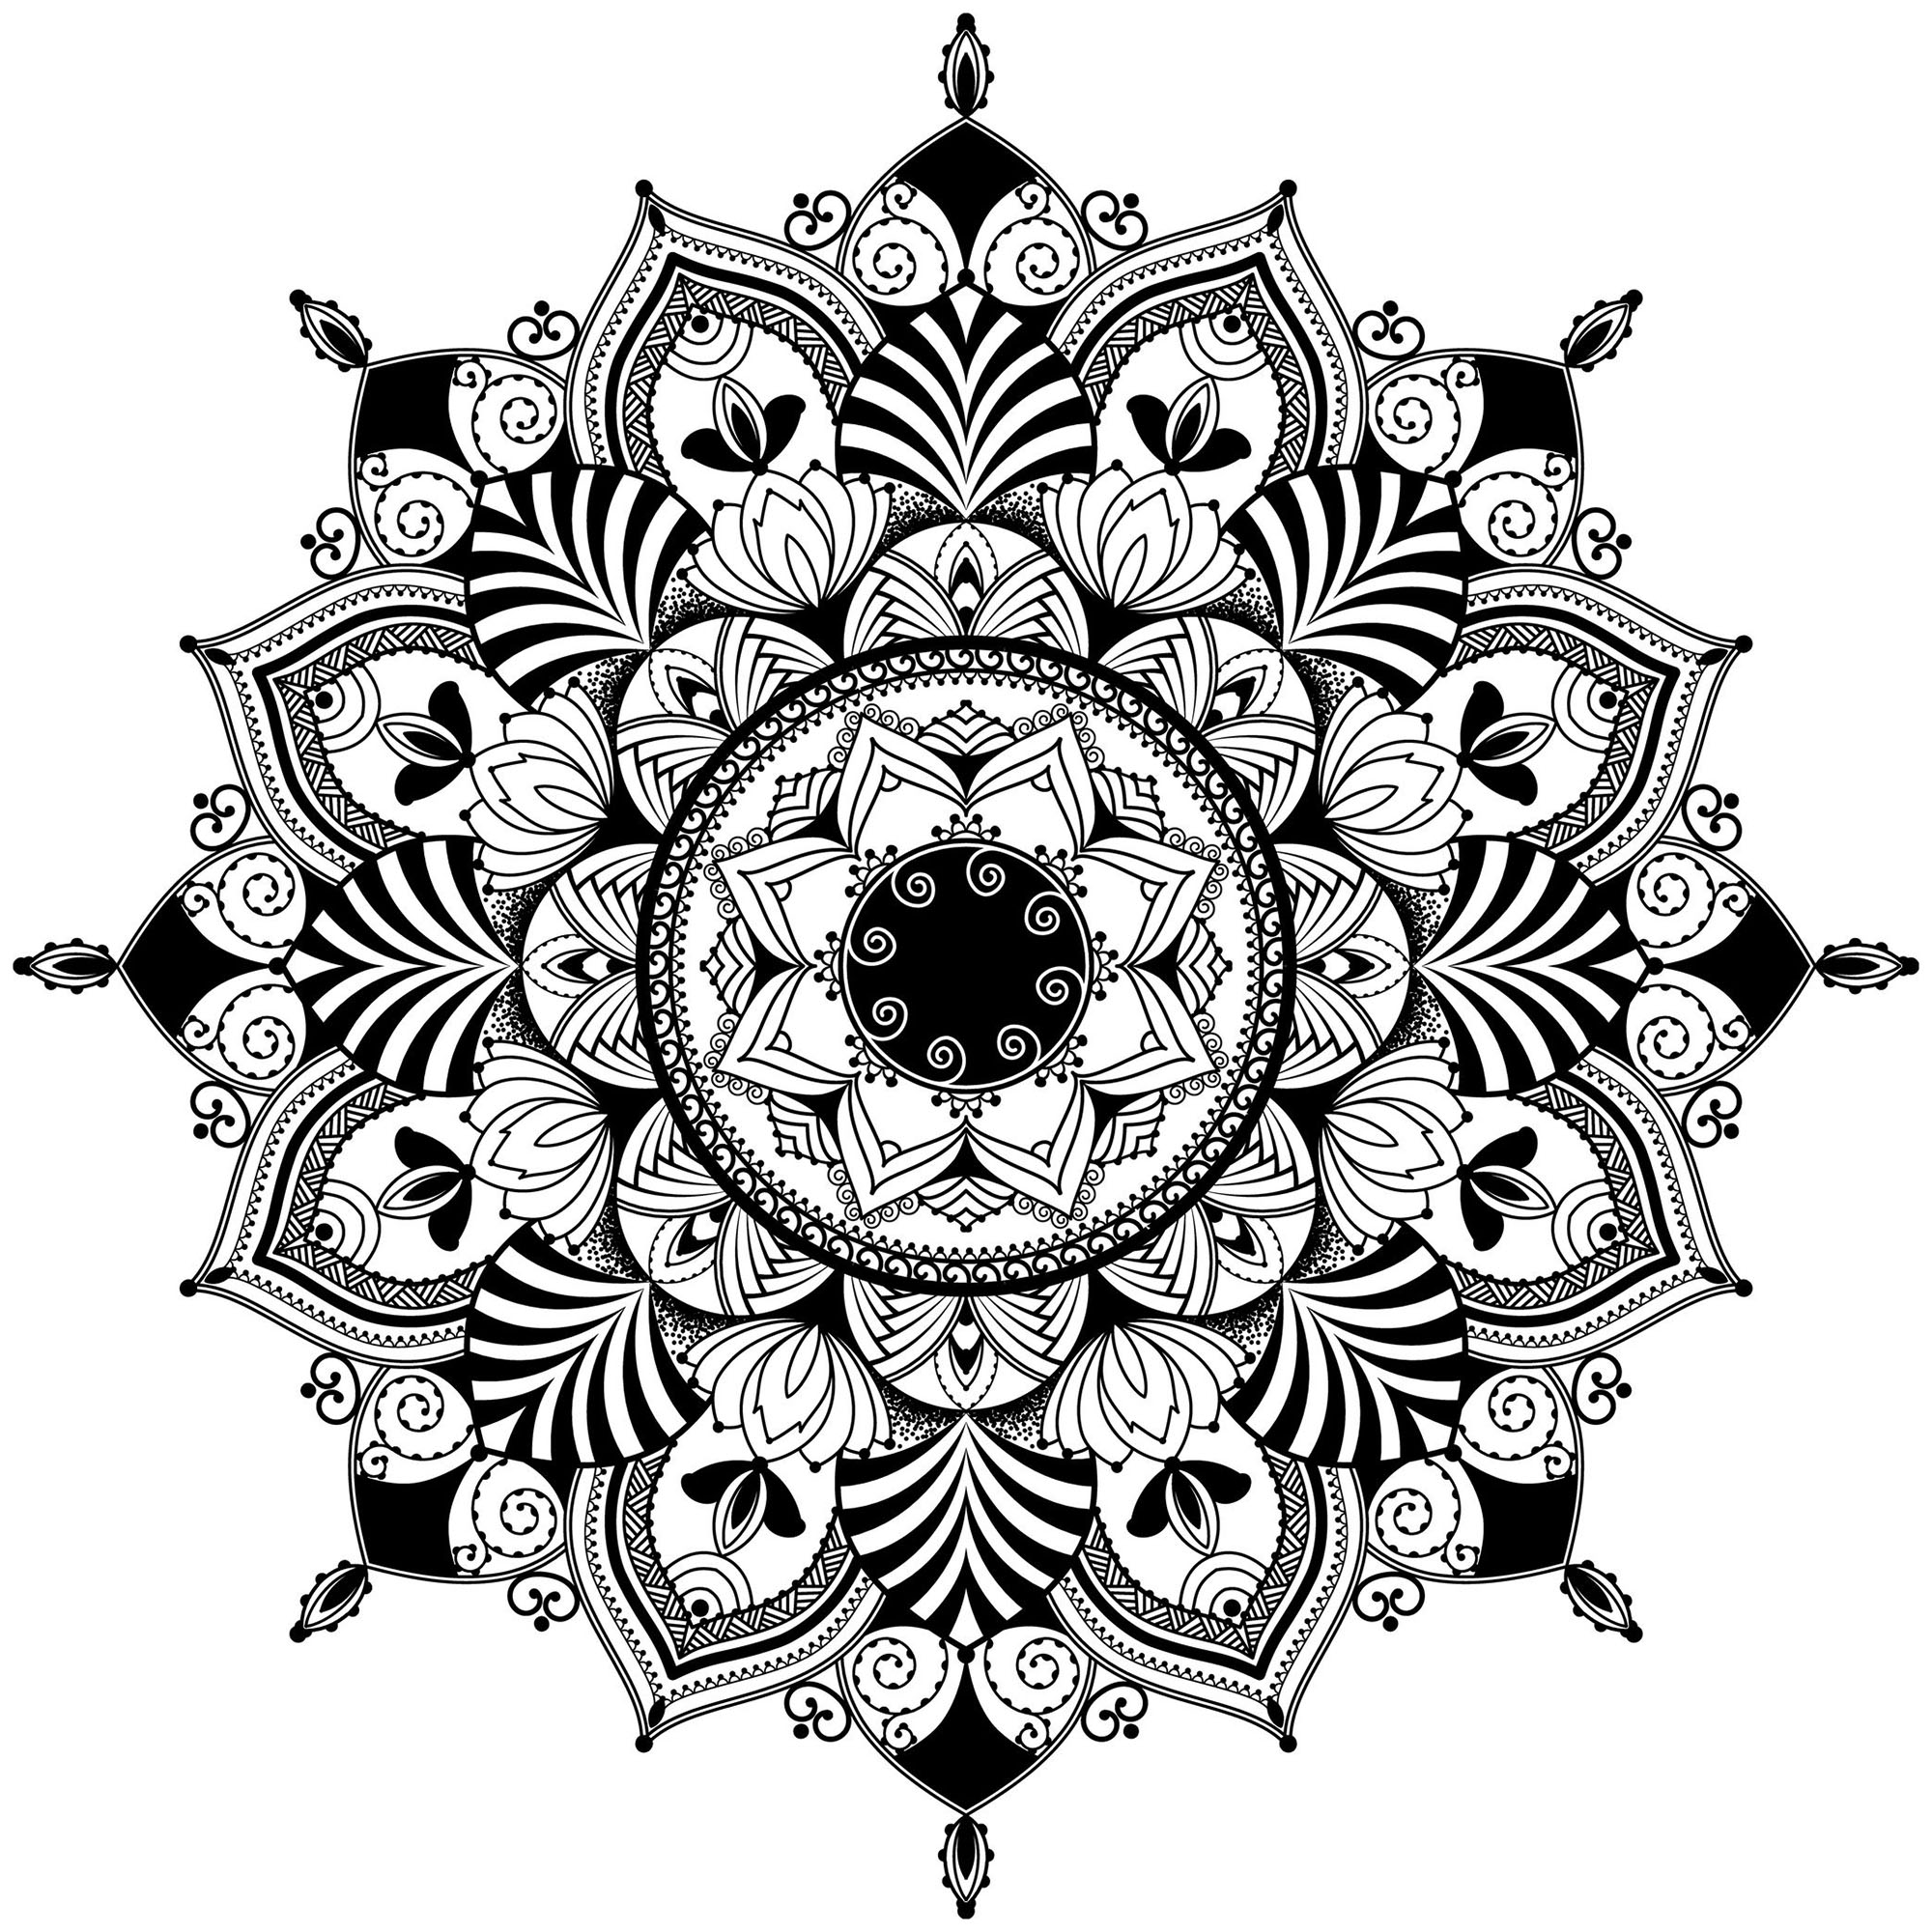 Si vous cherchez un Mandala pas trop compliqué à colorier, avec des éléments harmonieux et fleuris, et un niveau de difficulté relatif, celui-ci est parfait pour vous.